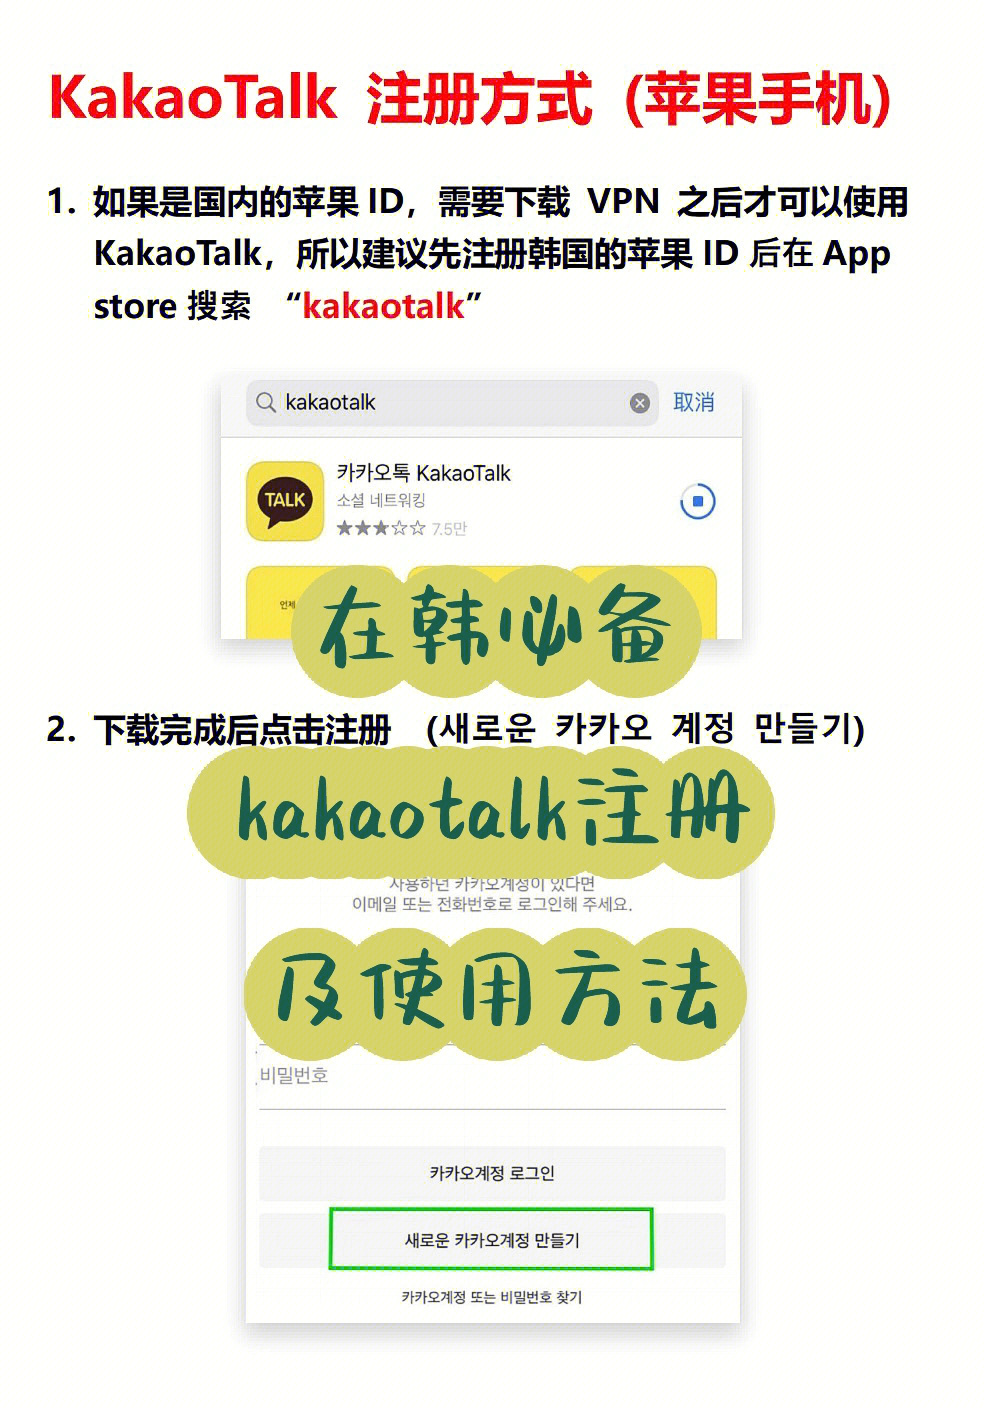 韩国的微信——kakaotalk在韩留学生,在韩打工人必备,所以来看看怎么